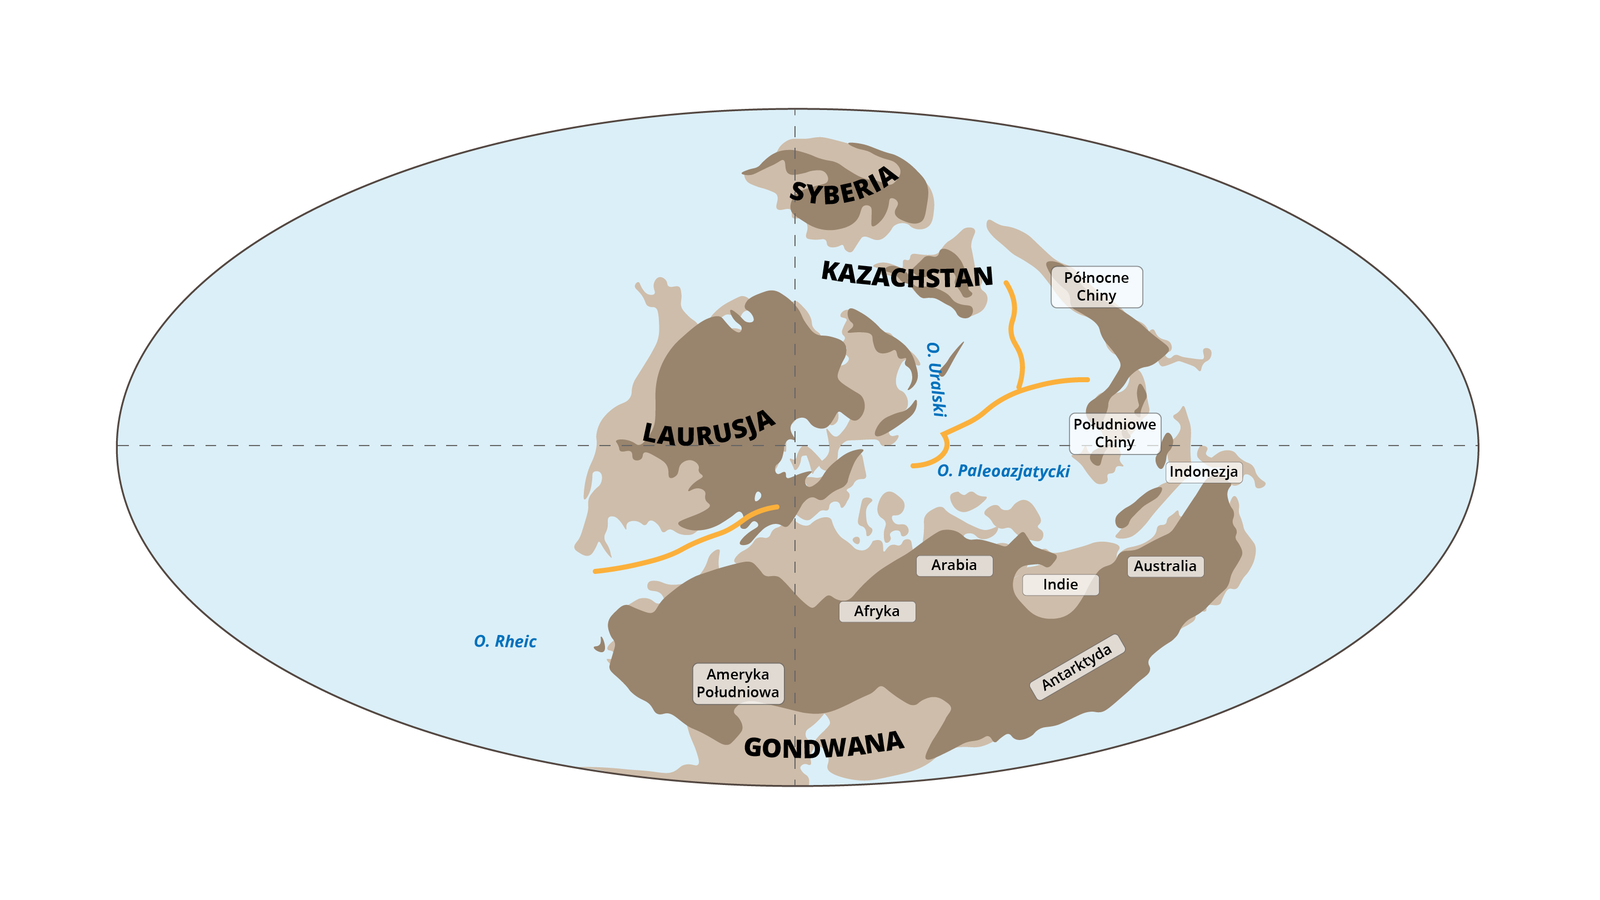 Ilustracja przedstawia owalną mapę świata prezentującą ewolucję Karpat w karbonie. Gondwana jest połączona z Laurusją jedynie wąskim przesmykiem. Powyżej Laurusji po prawej stronie jest Kazachstan, a nad nim Syberia. Stanowią oddzielne lądy. Gondwanę od lewej strony tworzą: Ameryka Południowa, Afryka, Arabia, Indie, Antarktyda, Australia. Powyżej Australii leży Indonezja. Na północ od Indonezji Południowe Chiny i Północne Chiny. 